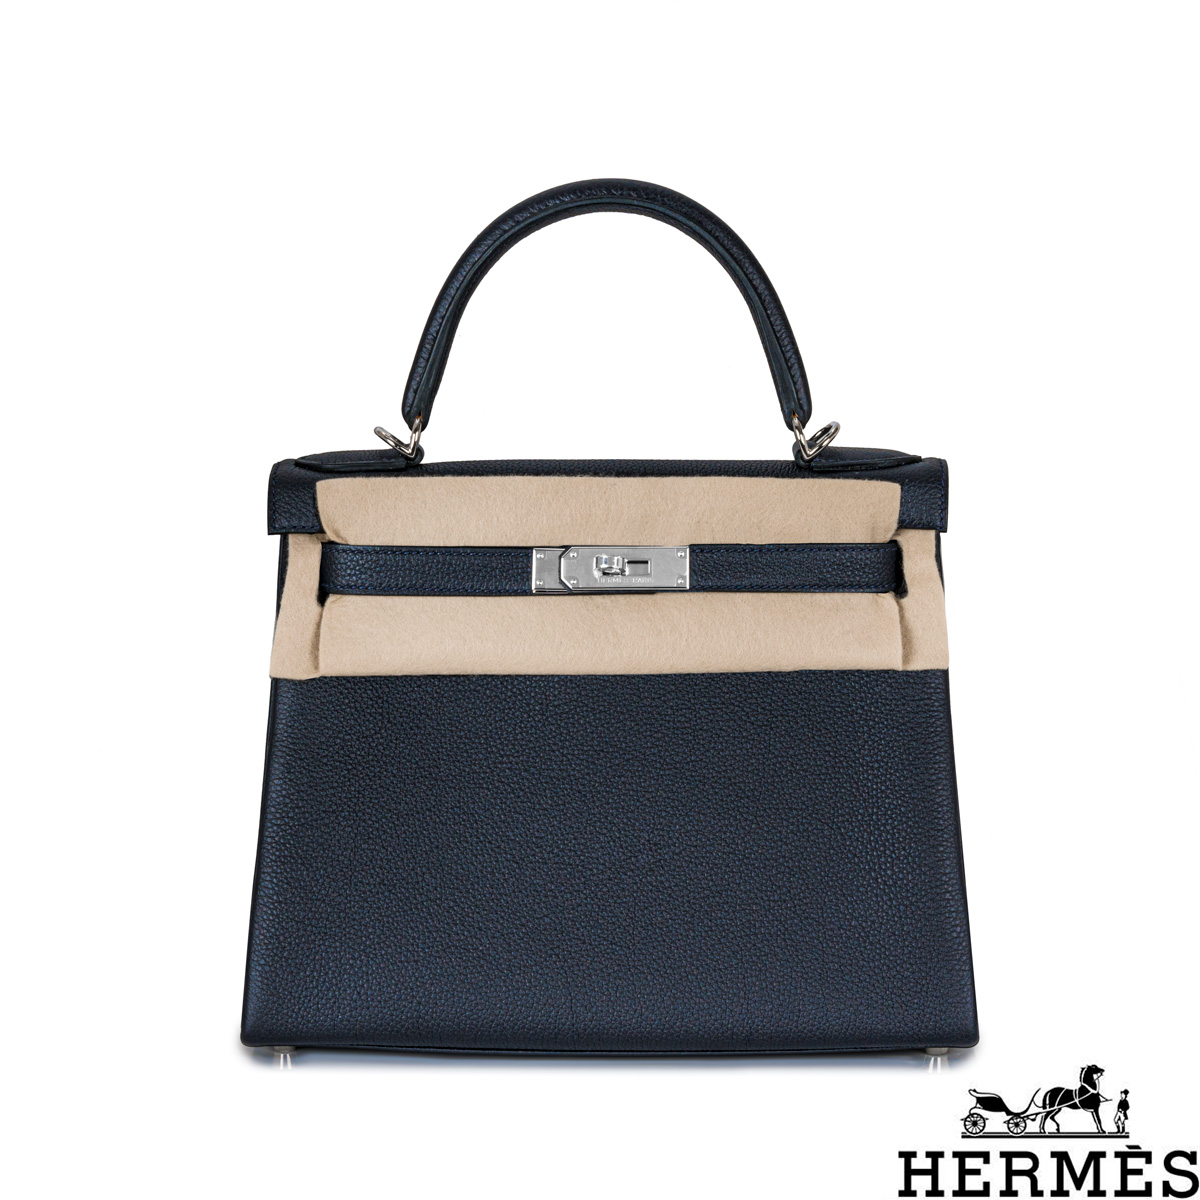 Hermes Kelly II 28 Retourne Black Noir Togo GHW Handbag, U Stamp with Twilly